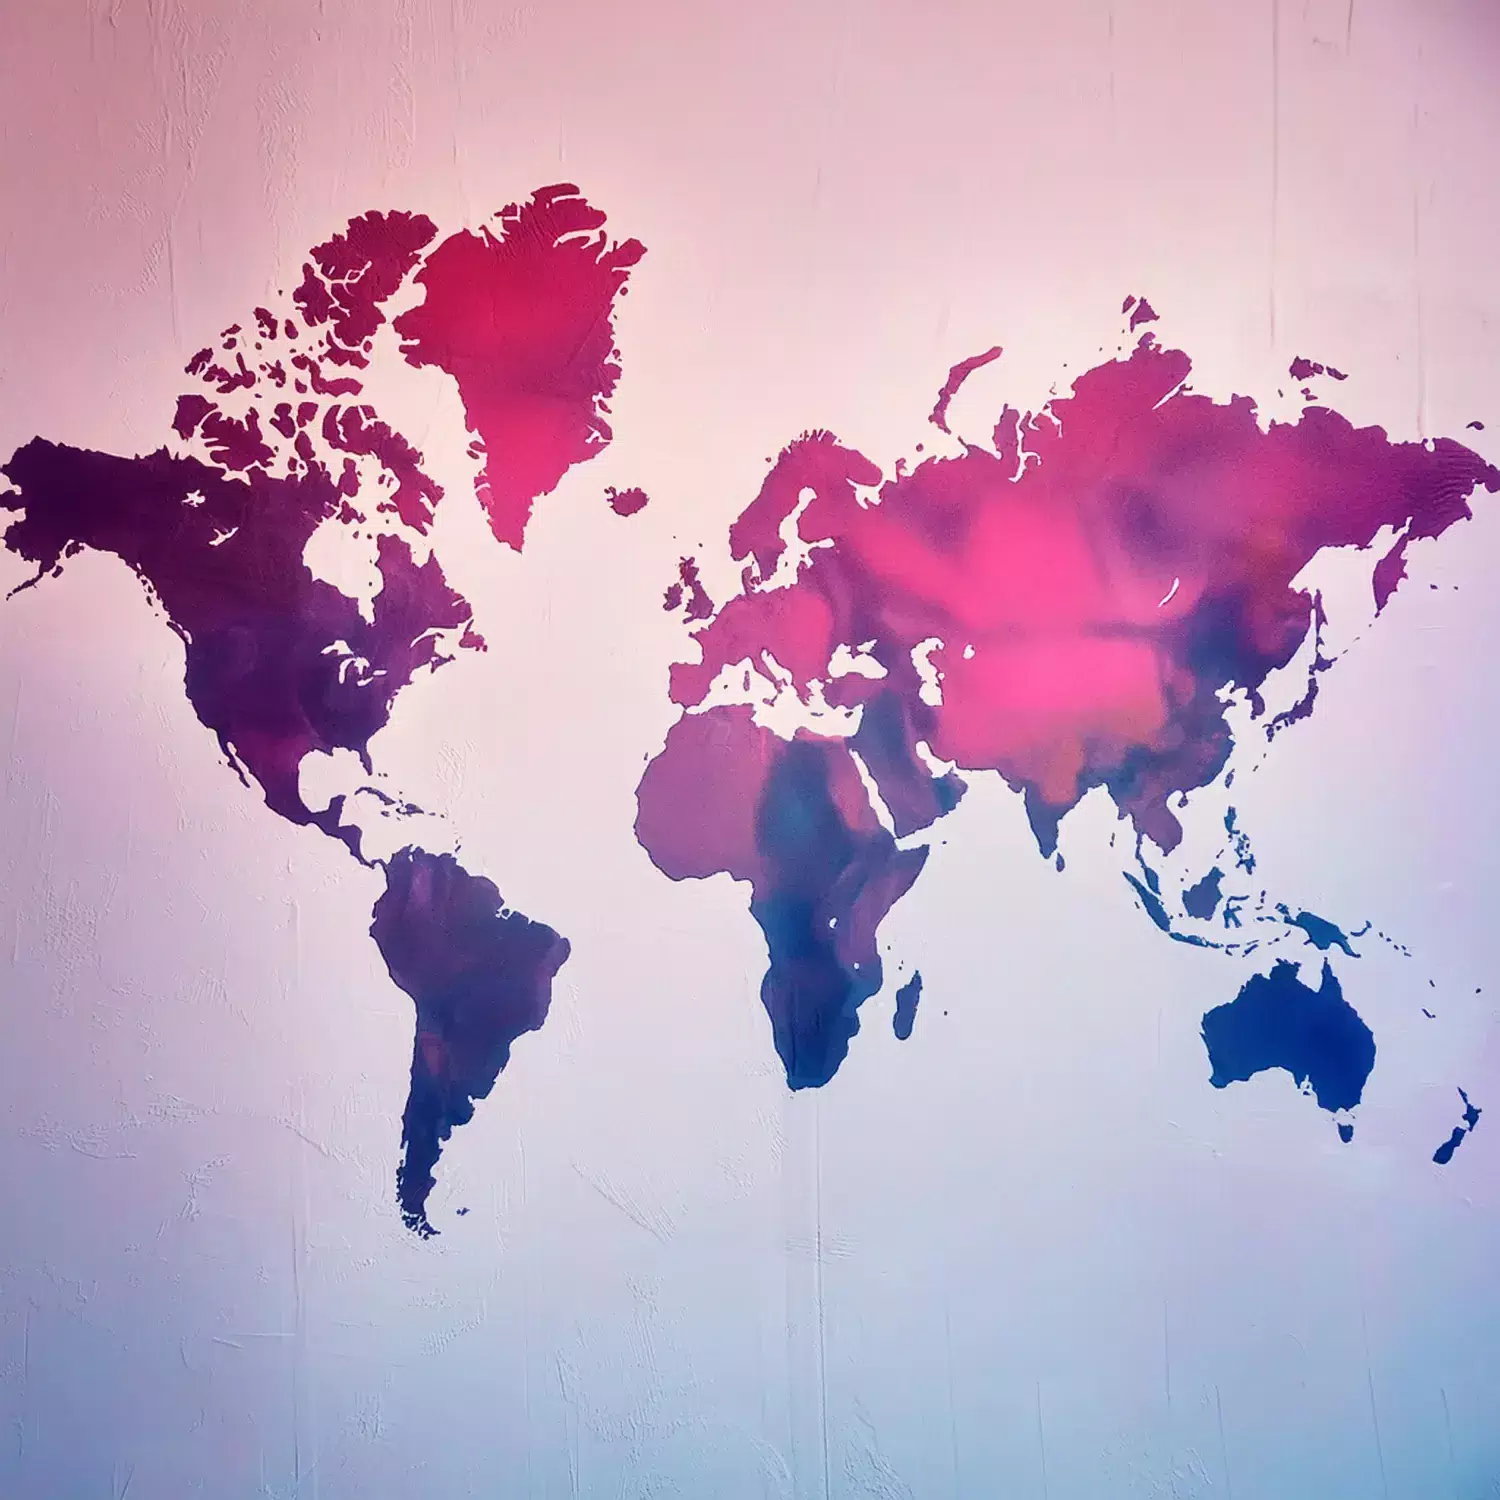 Målning av en världskarta i rosa, blå och lila toner